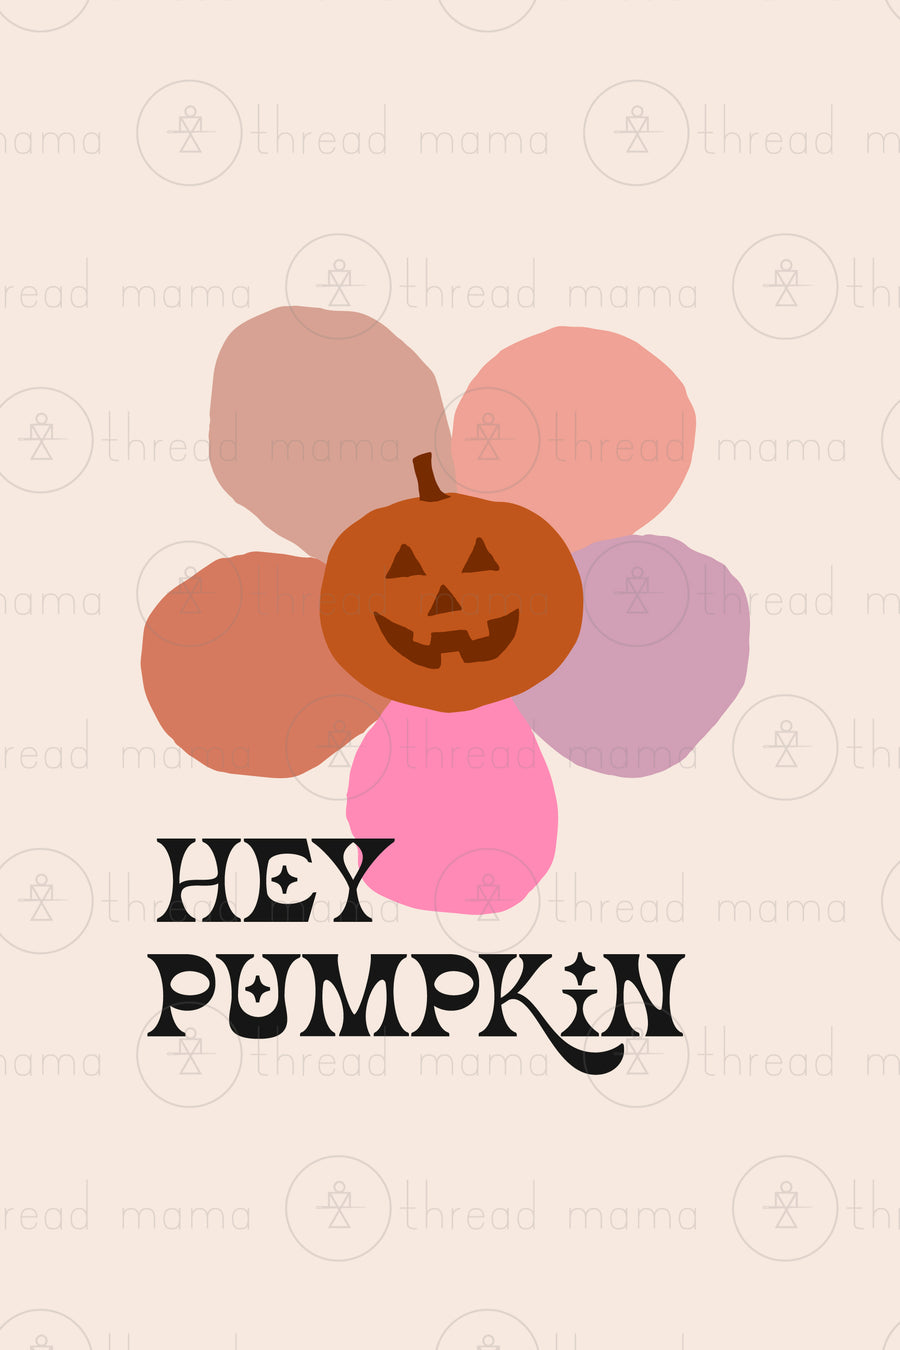 Hey Pumpkin - Set 1